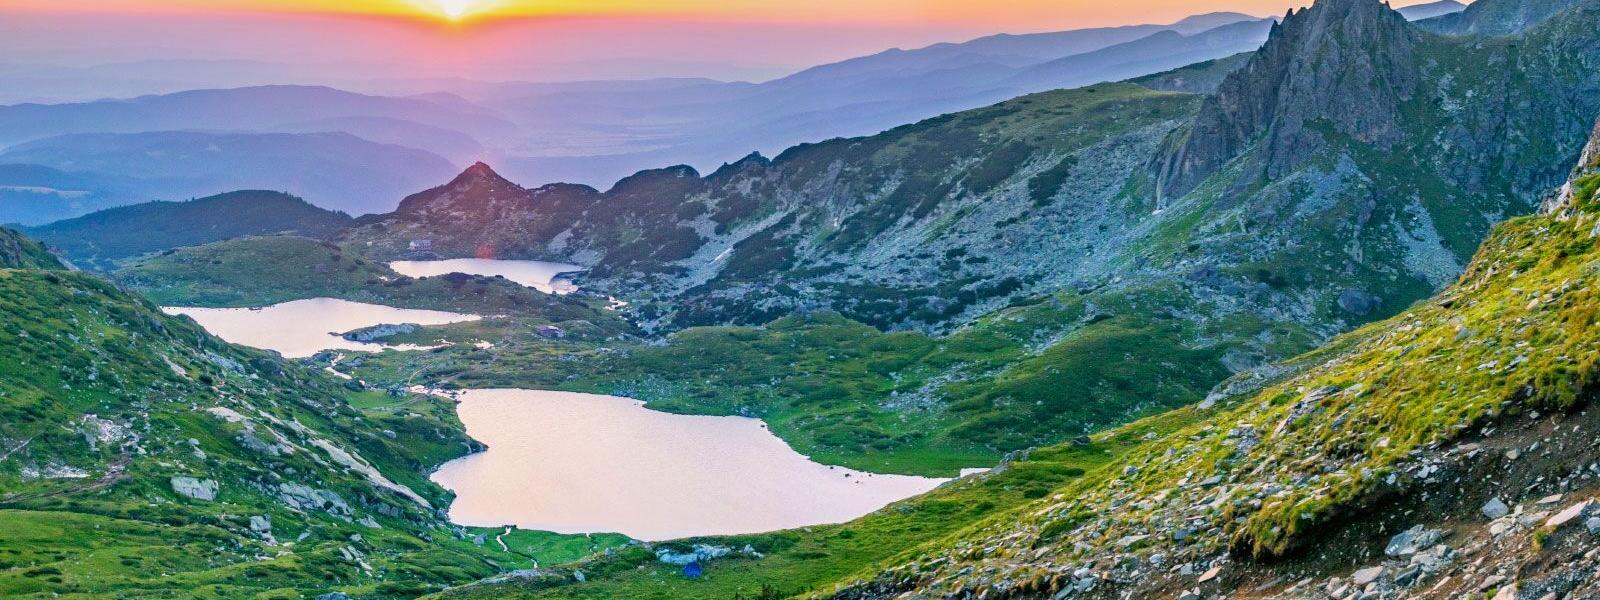 Ferienwohnungen und Ferienhäuser in Bulgarien - atraveo